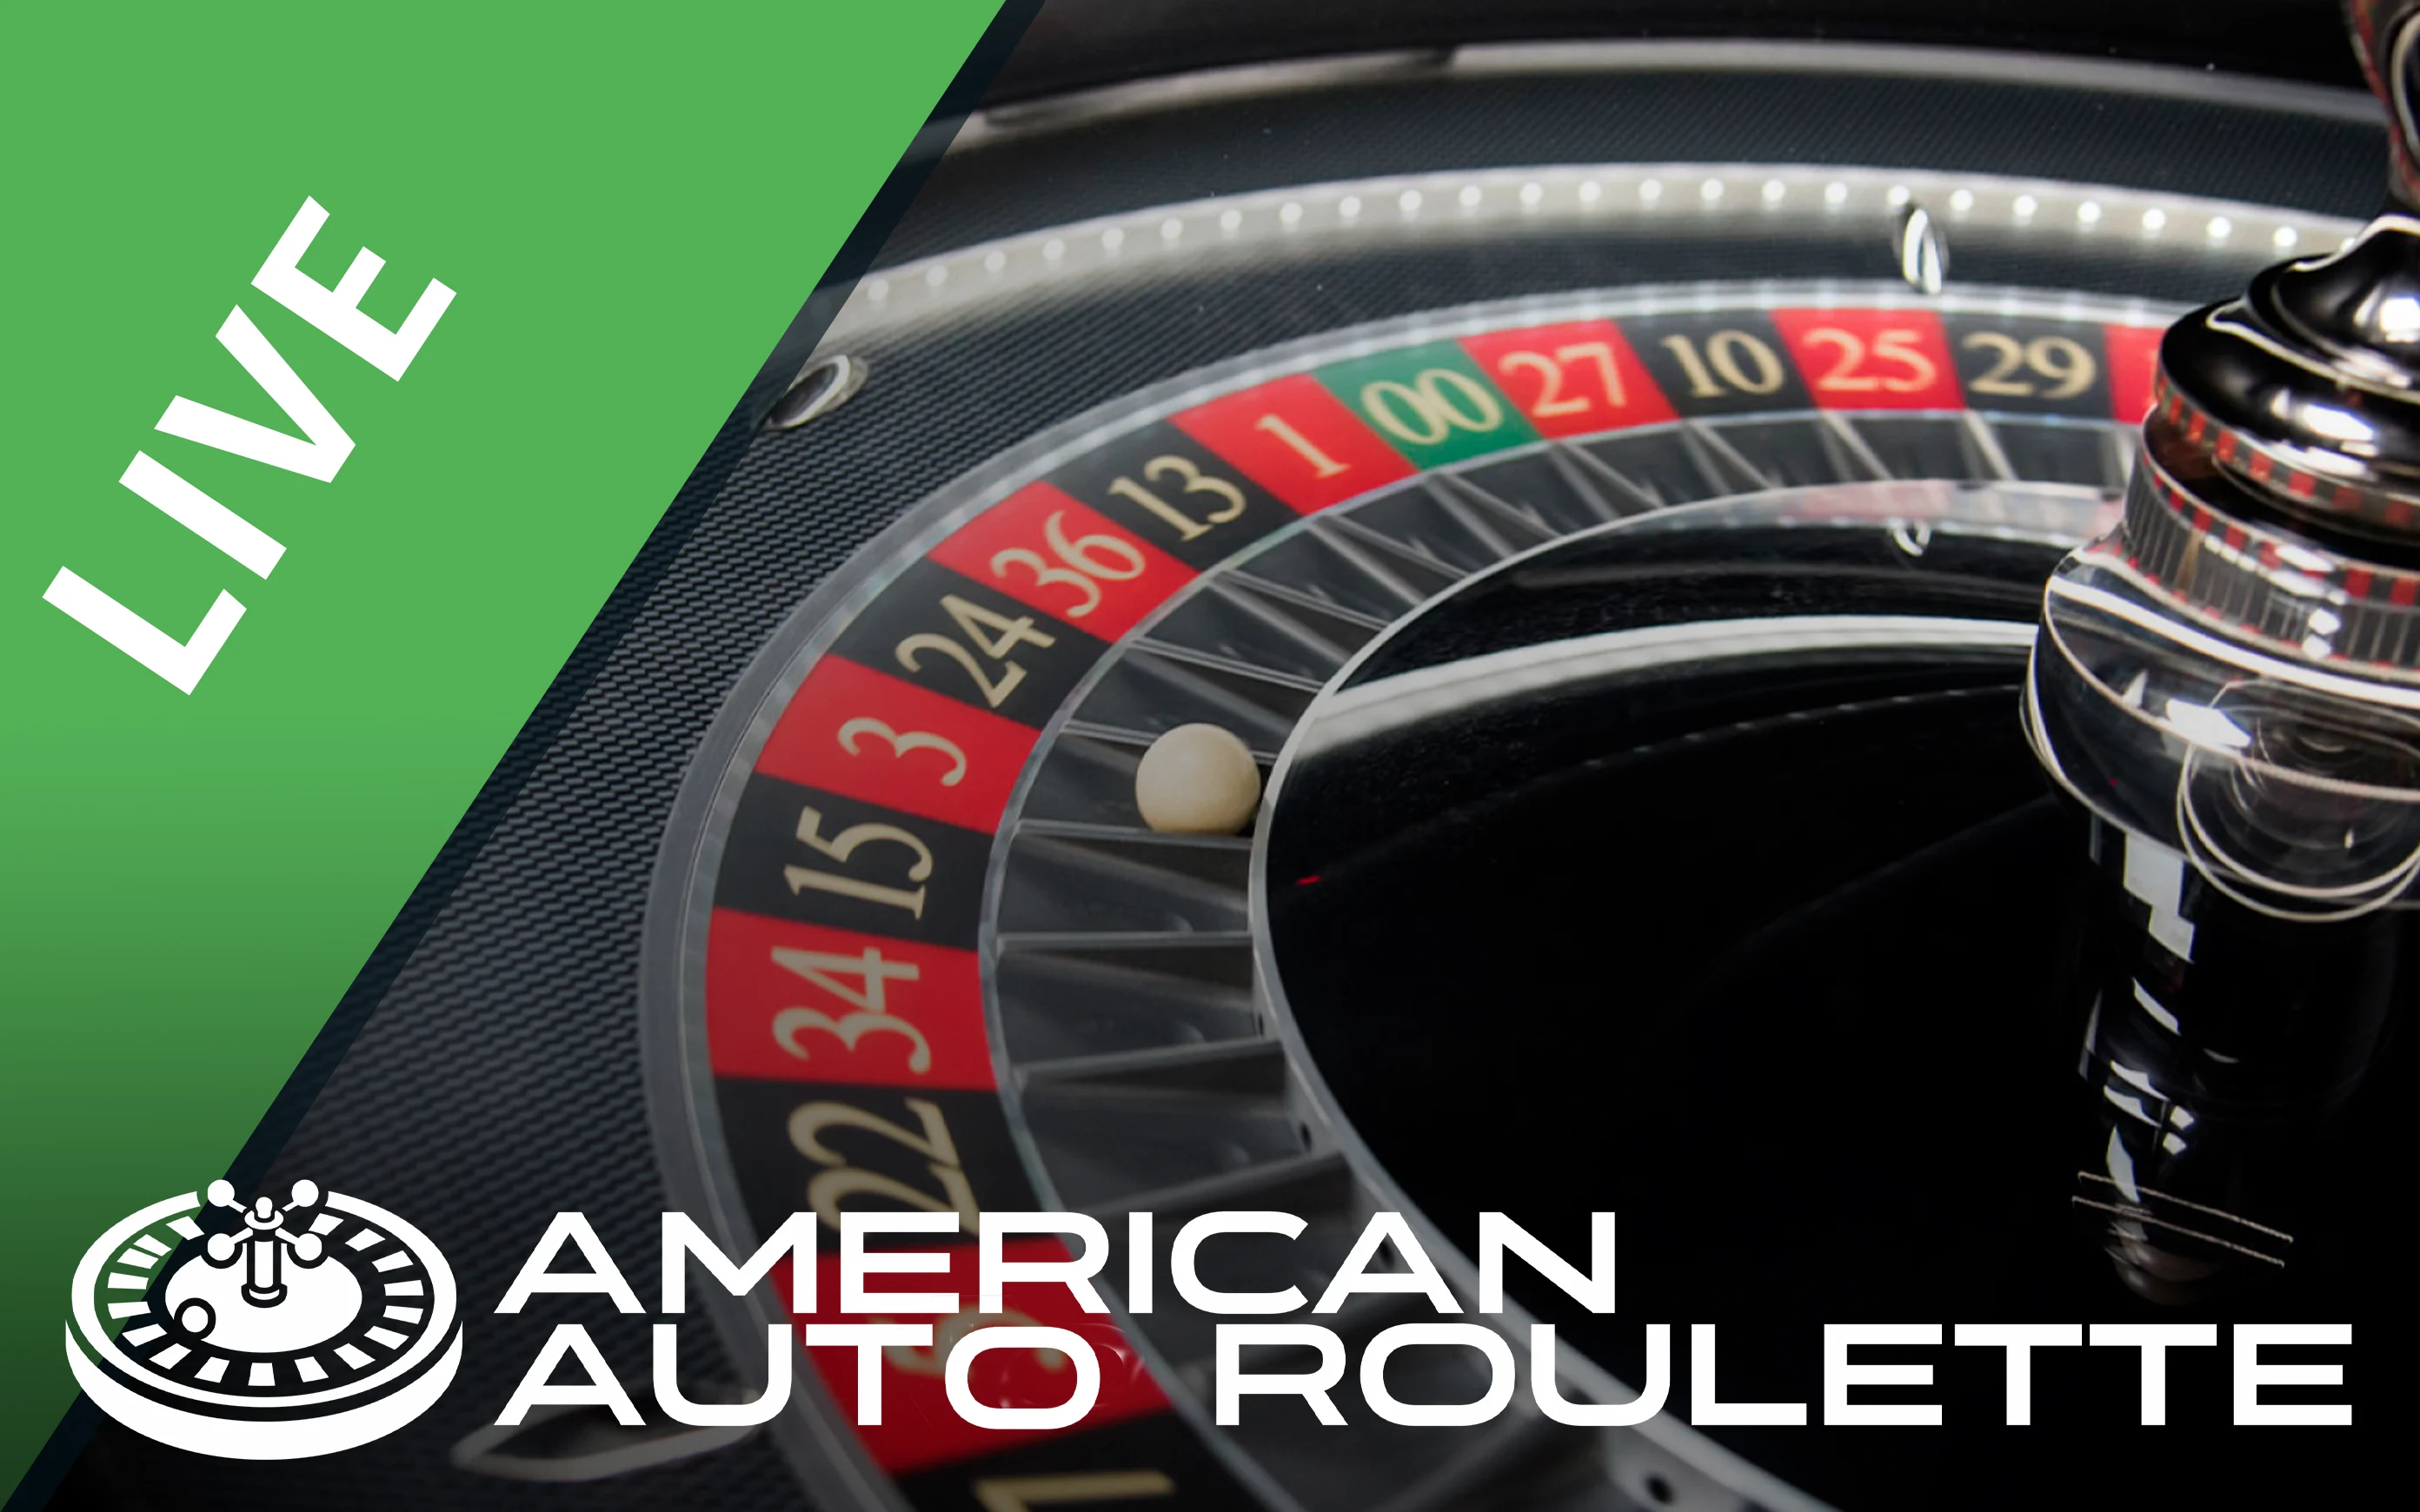 Jogue American Auto Roulette no casino online Starcasino.be 